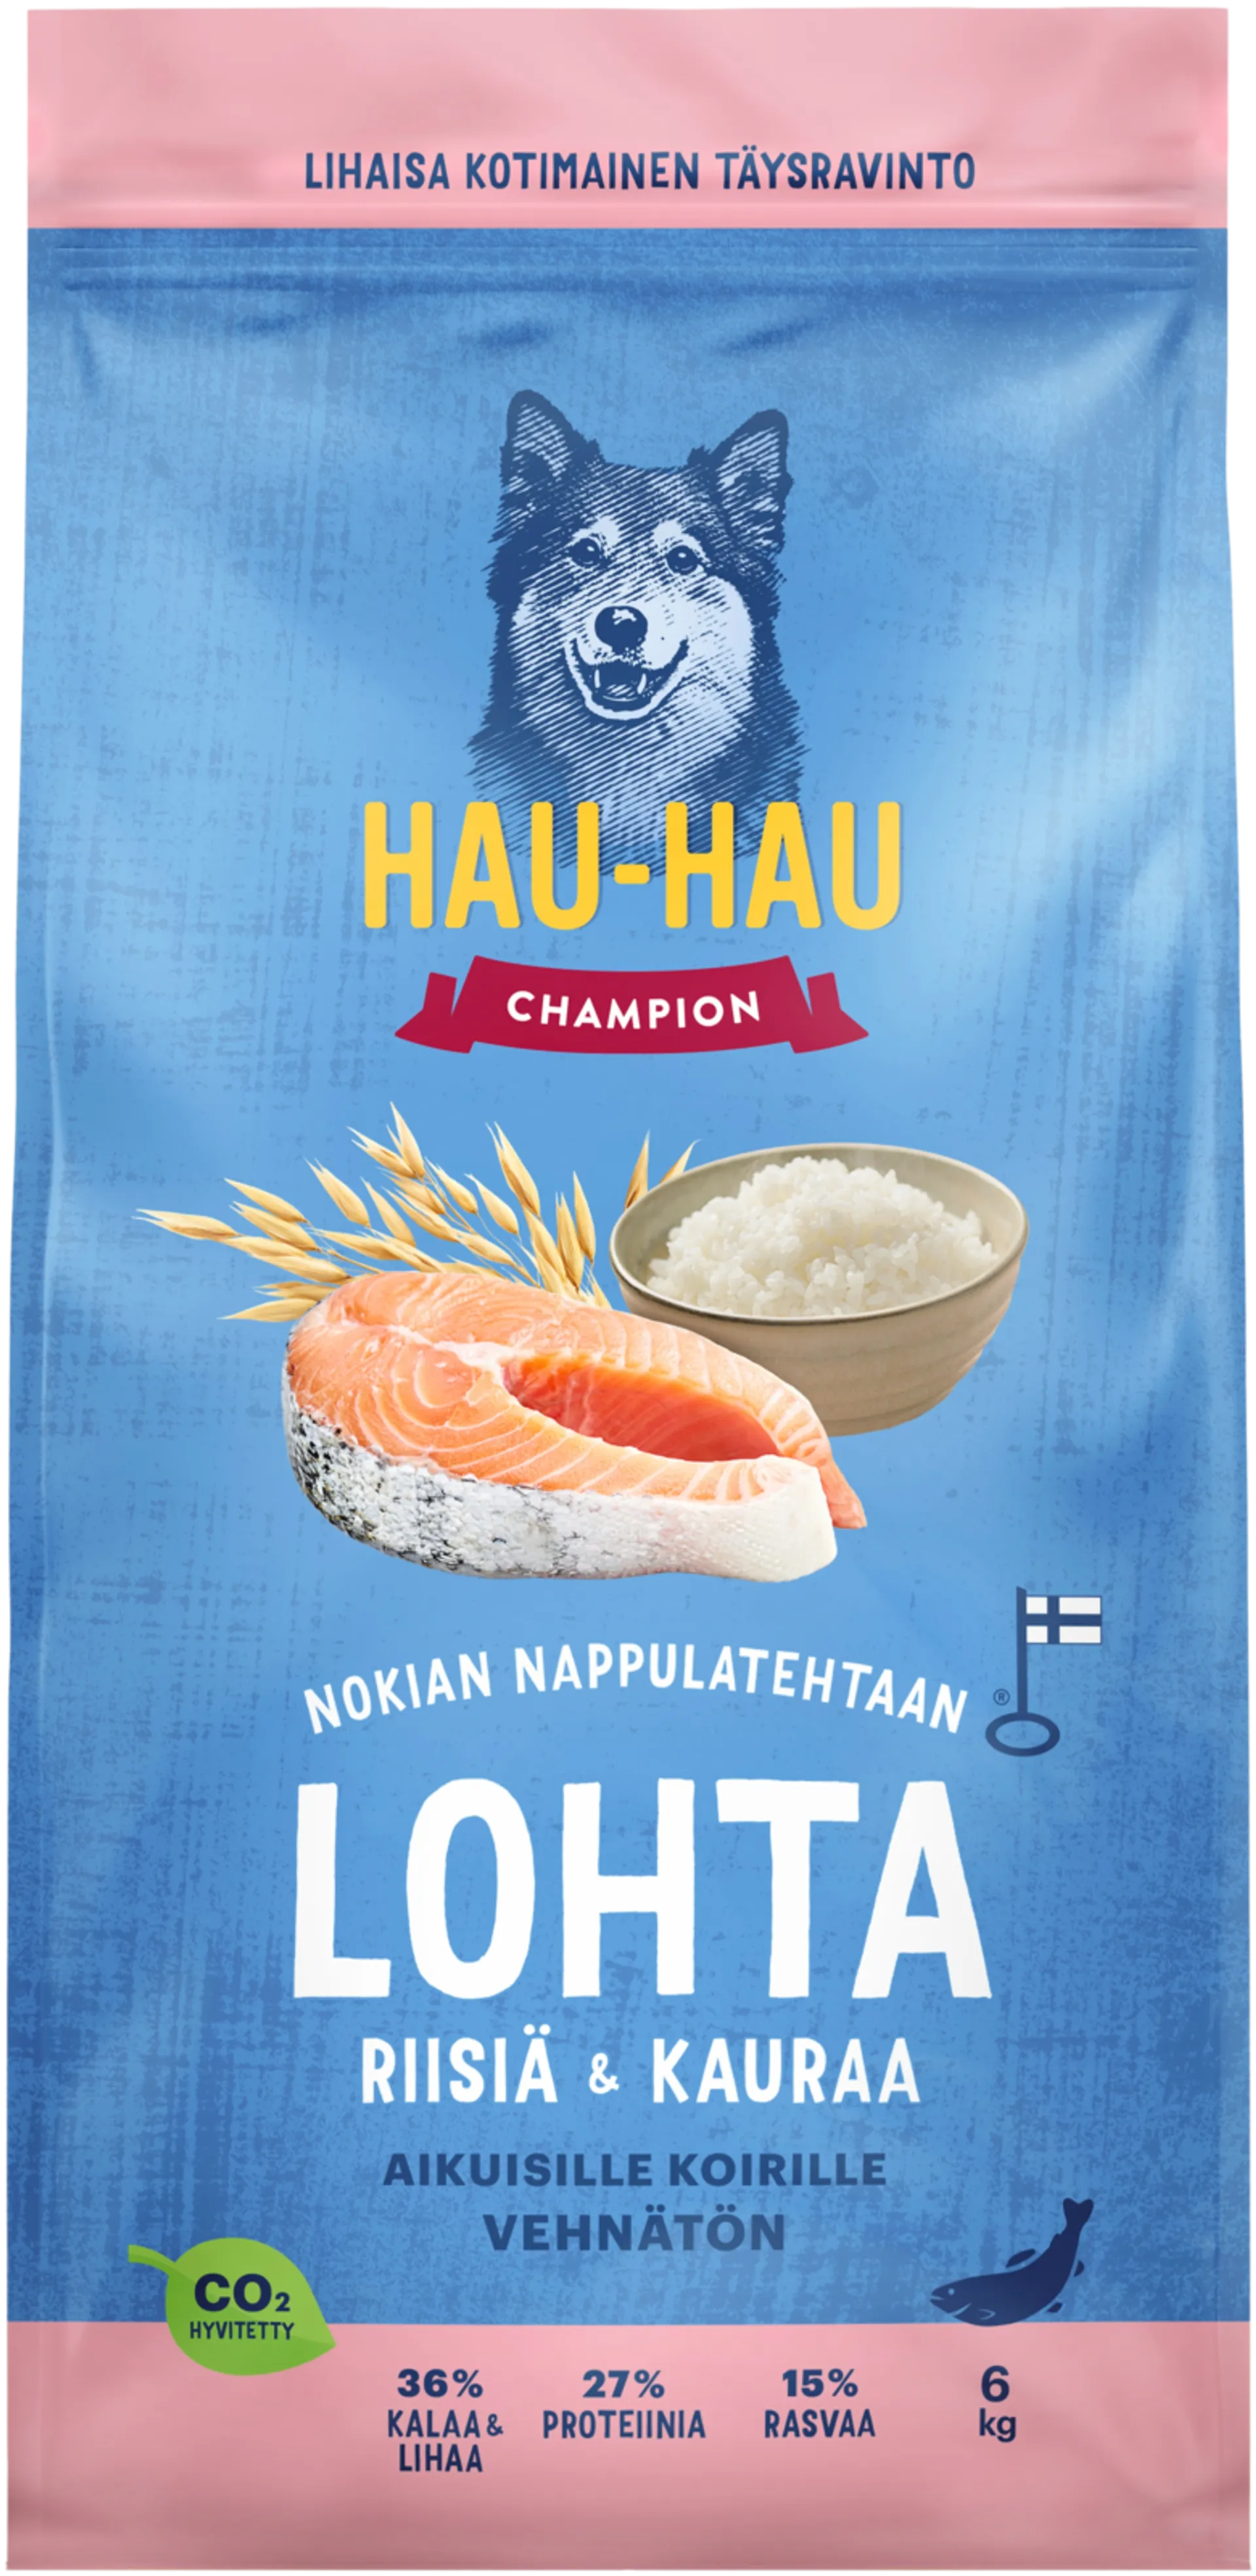 Hau-Hau Champion Nokian Nappulatehtaan Lohta, riisiä & kauraa täysravinto aikuisille koirille 6 kg